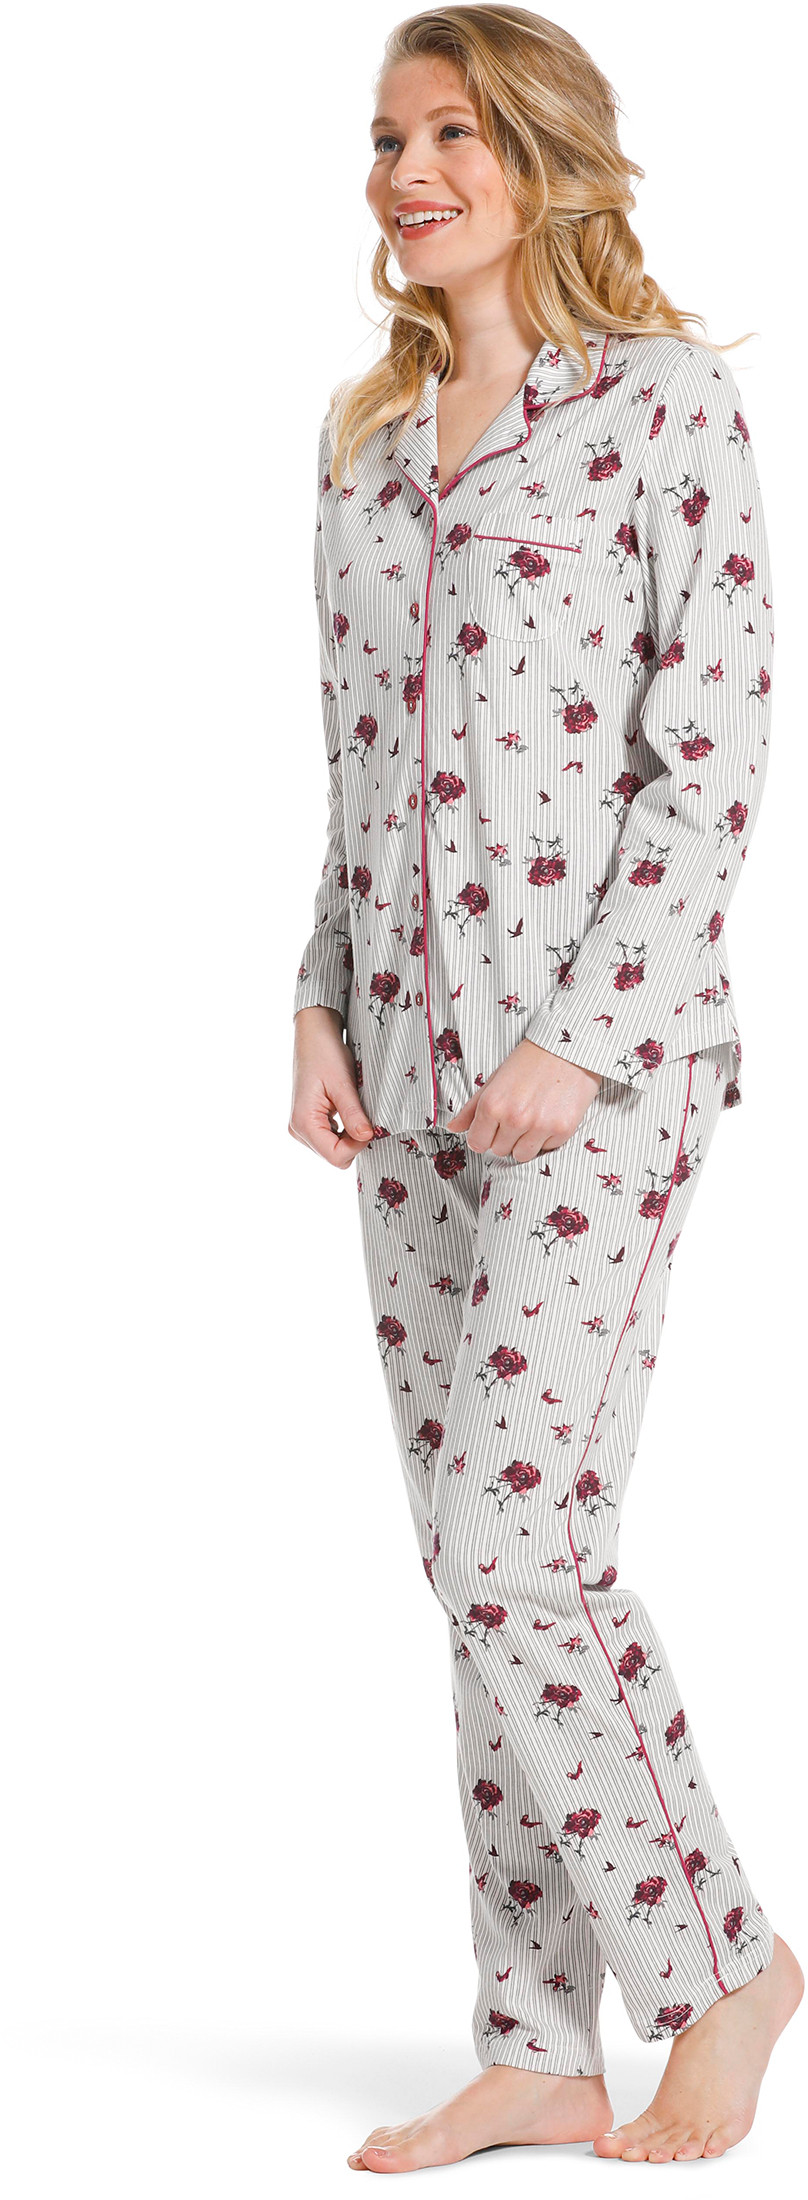 Pastunette doorknoop dames pyjama 20222-156-6-50